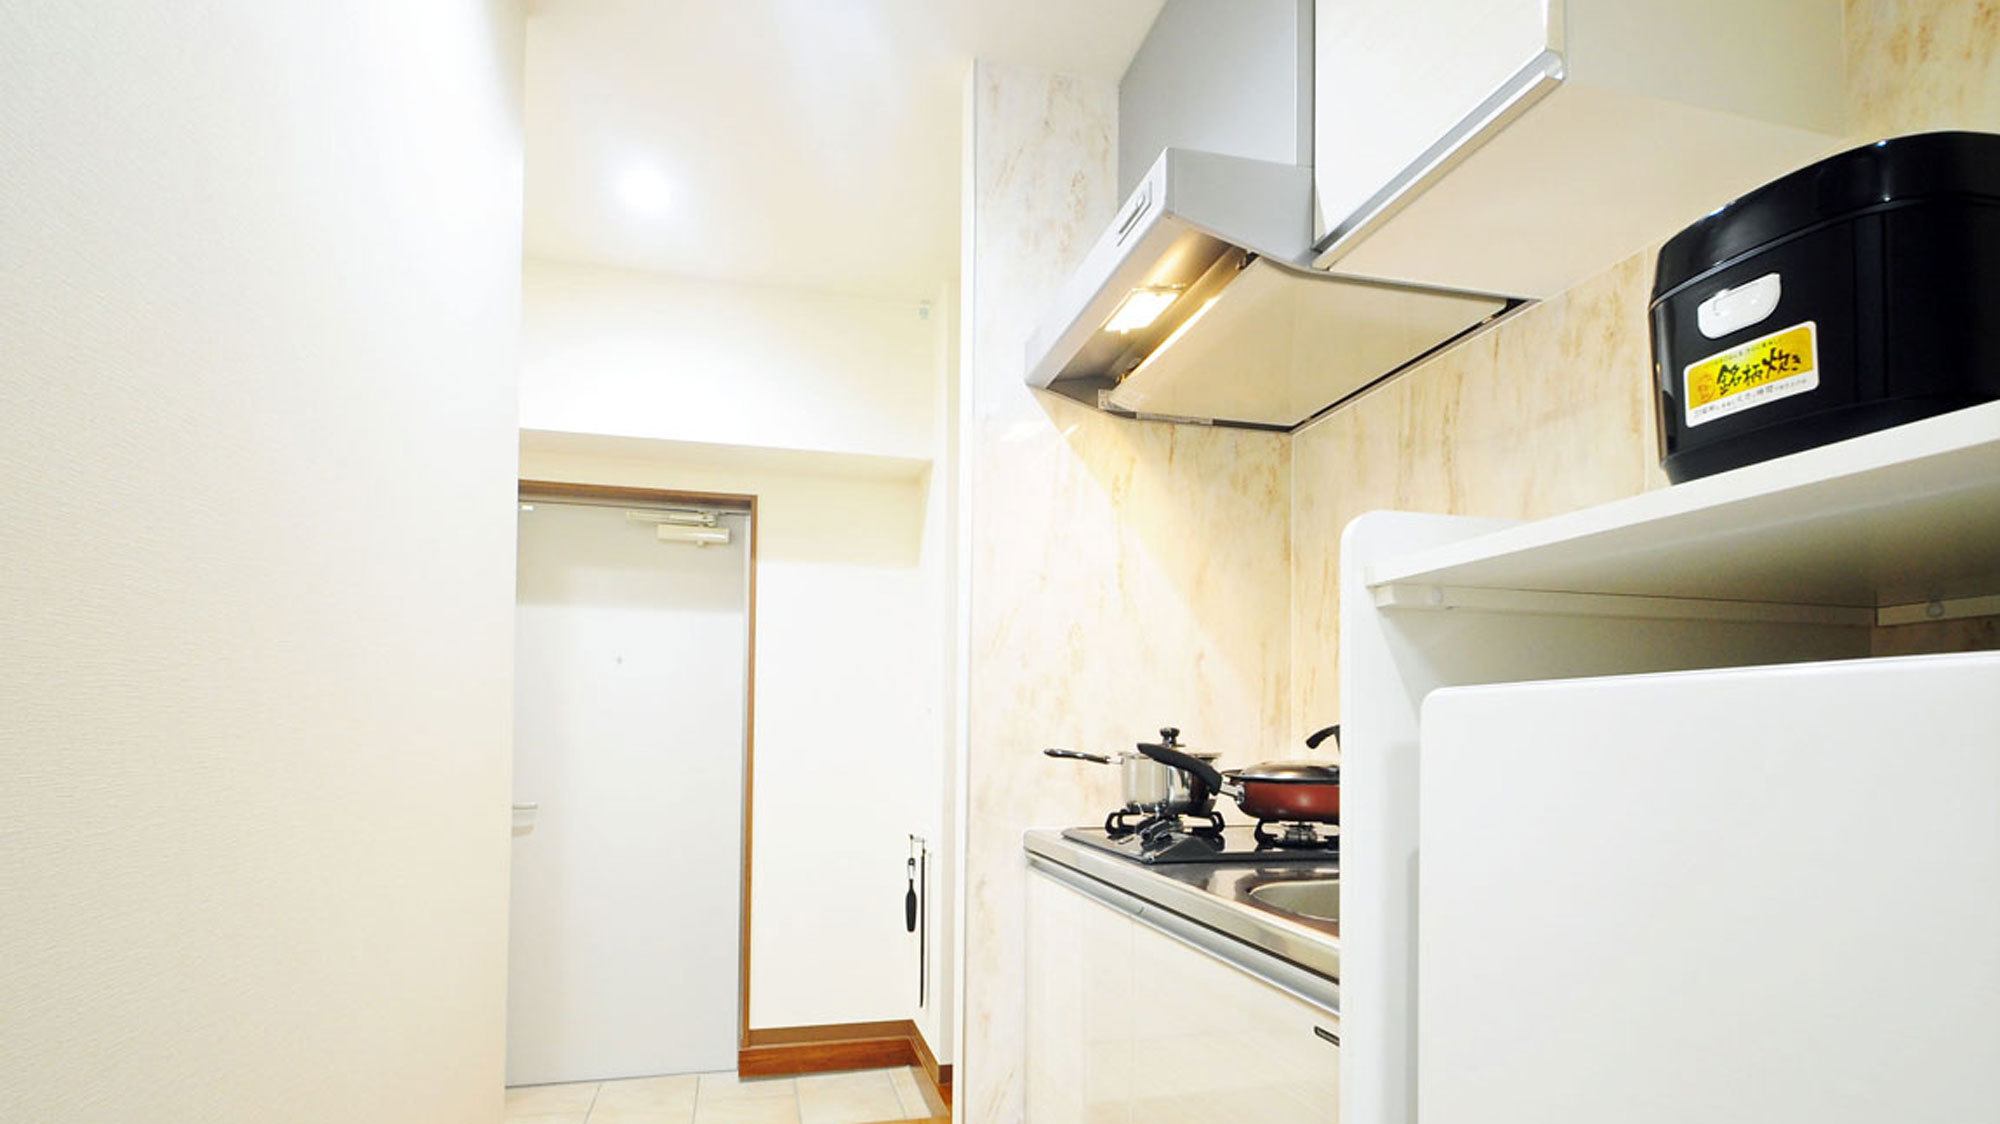 【客室】シングルルームのキッチンも機能的なビルドインコンロです